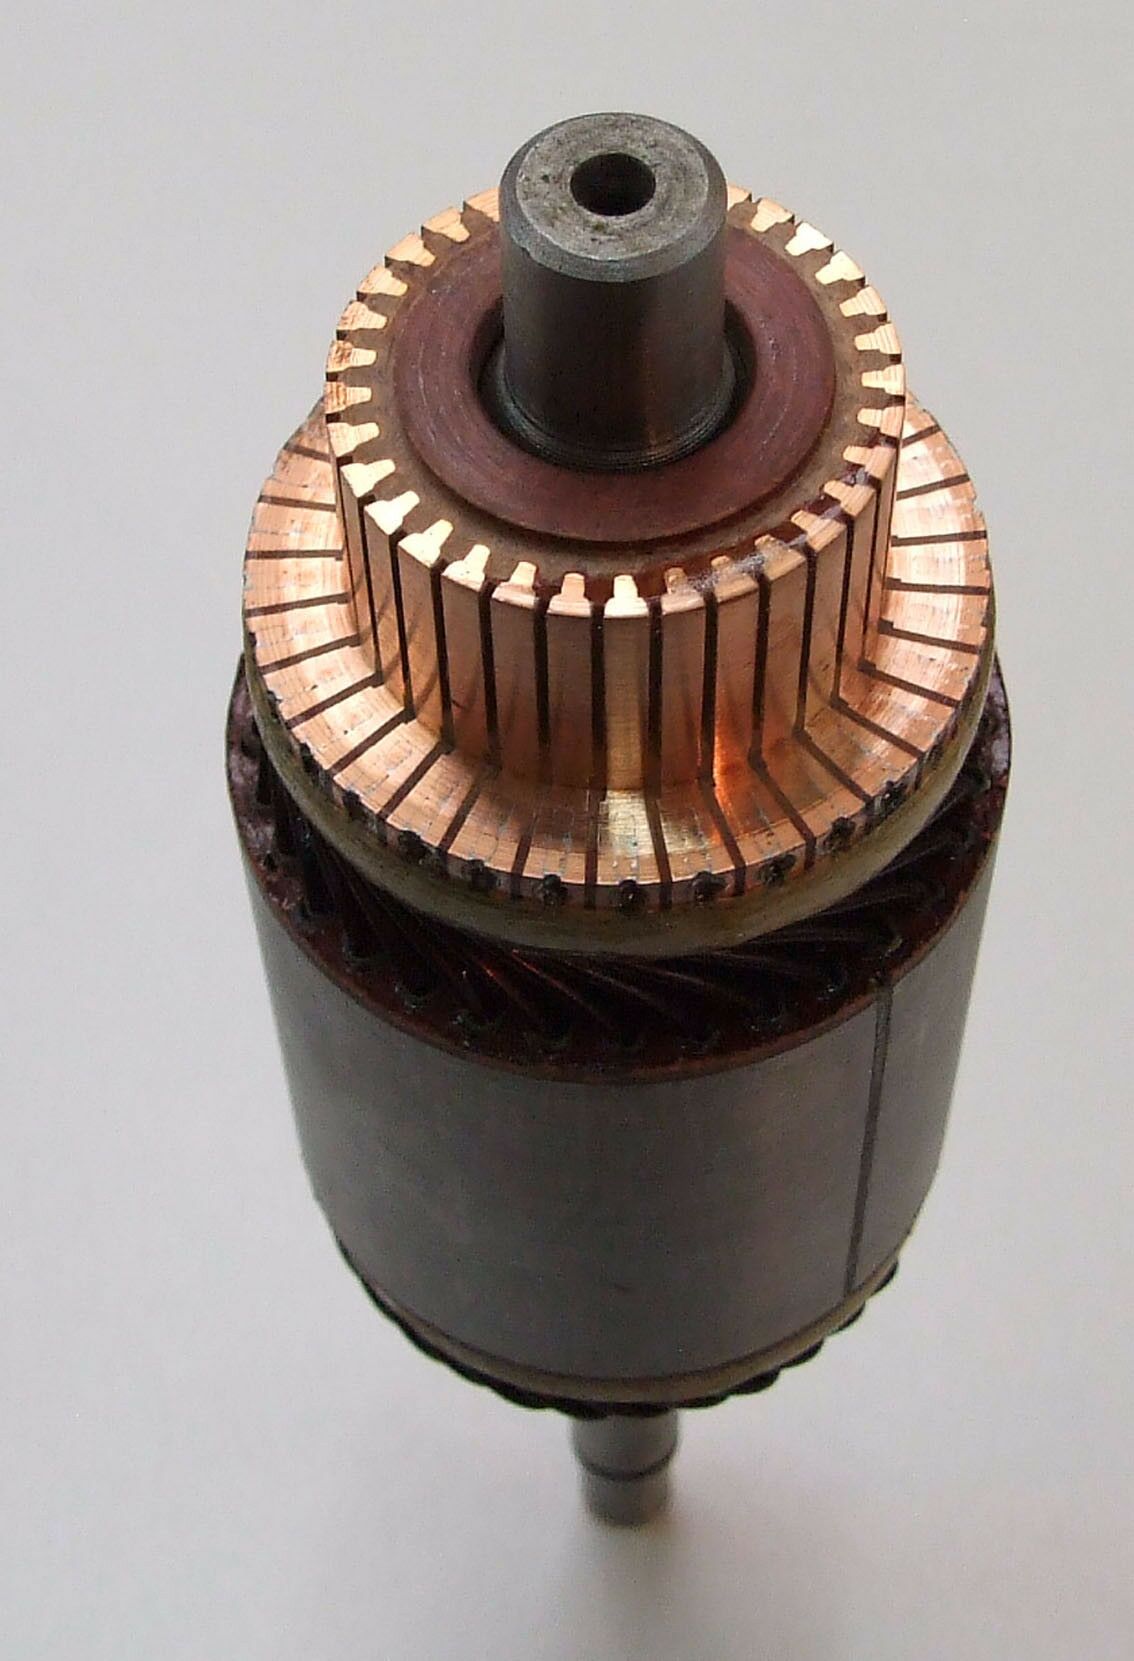 Rotor elektropokretaca mitsubishi mazda